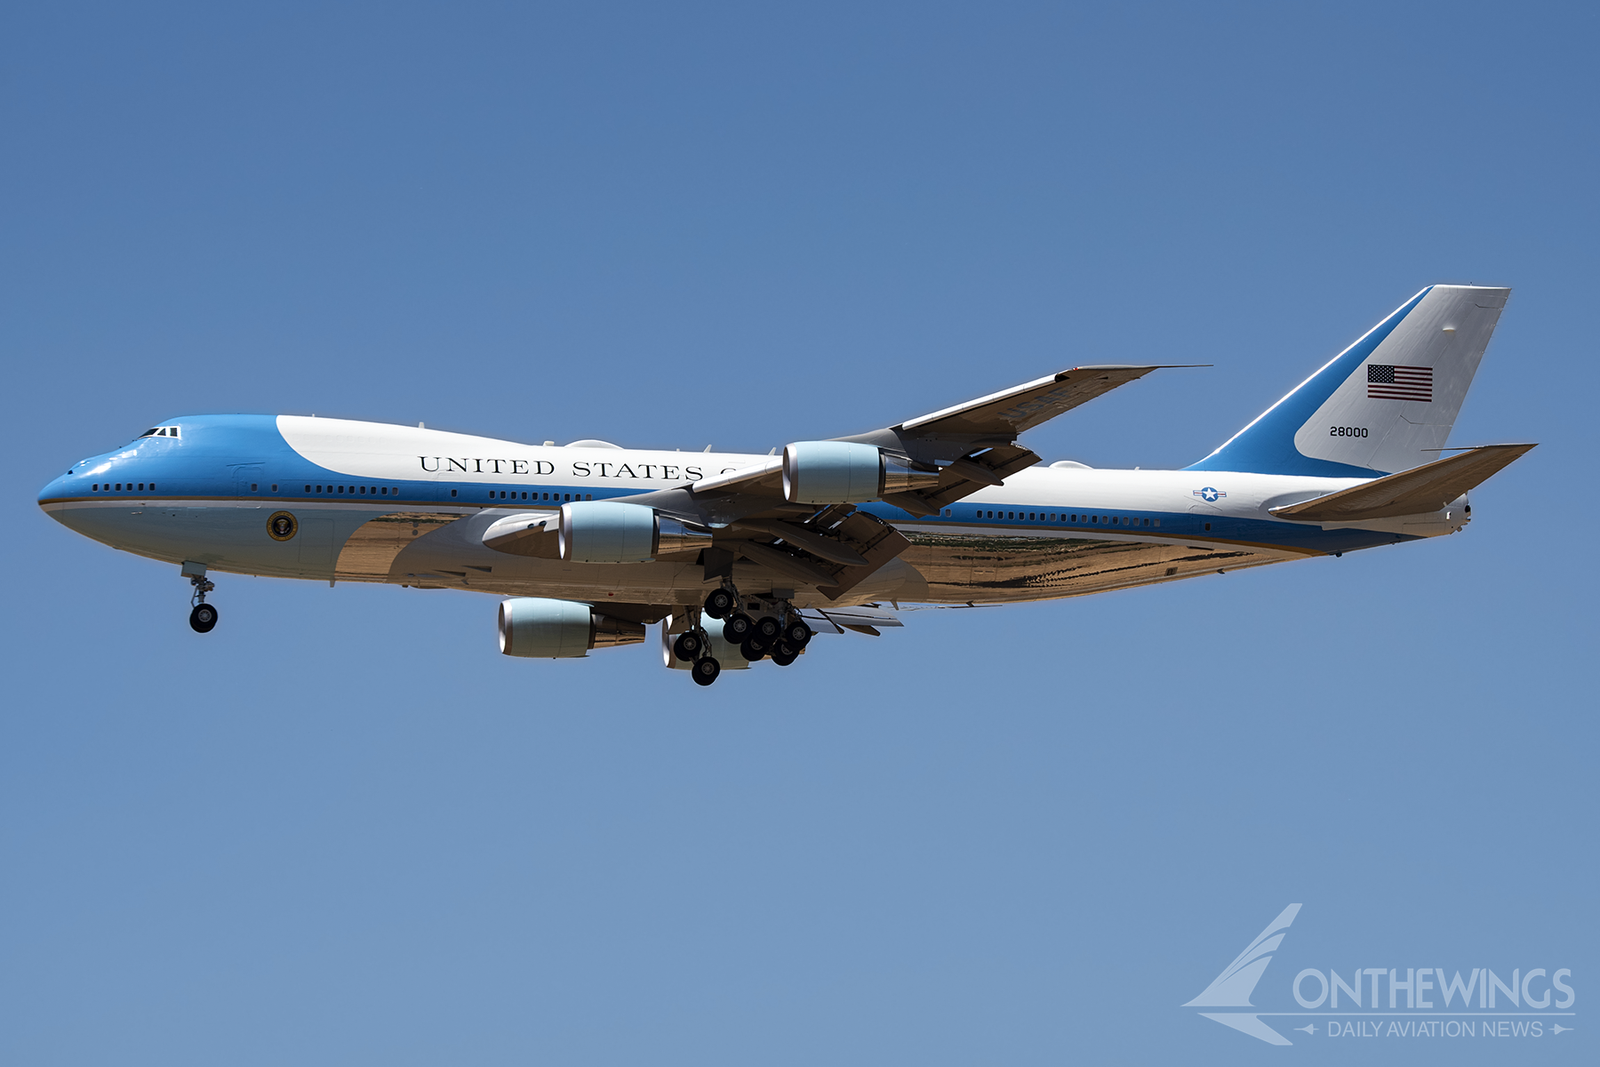 Uno de los Boeing 747-200 (denominación militar VC-25A) comúnmente conocido como Air Force One.